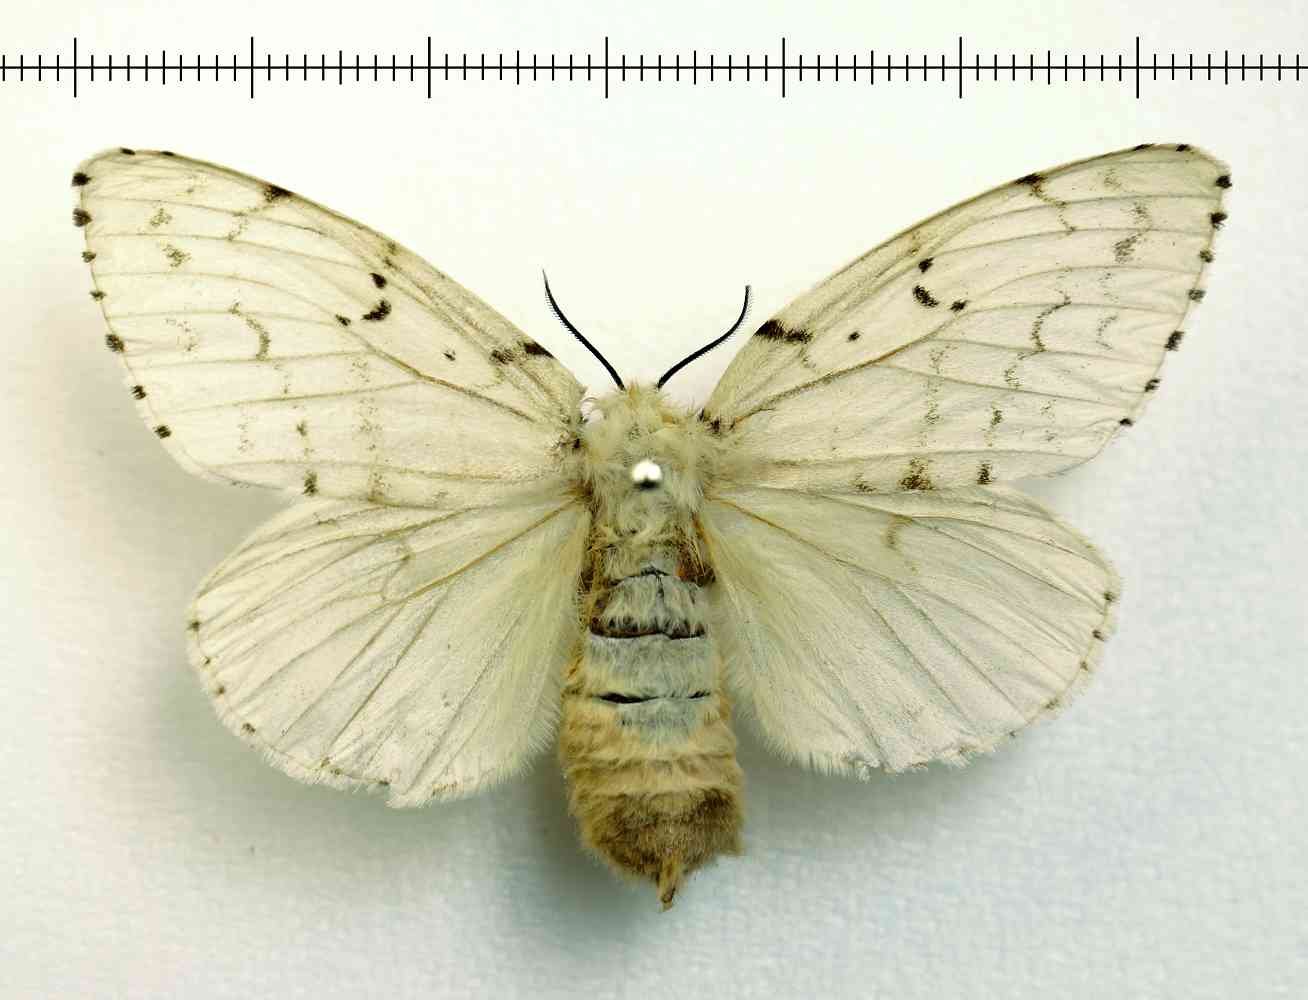 Fleur шелкопряд. Lymantria dispar (Linnaeus, 1758). Непарный тутовый шелкопряд. Шелкопряд непарный шелкопряд. Волнянка непарный шелкопряд.